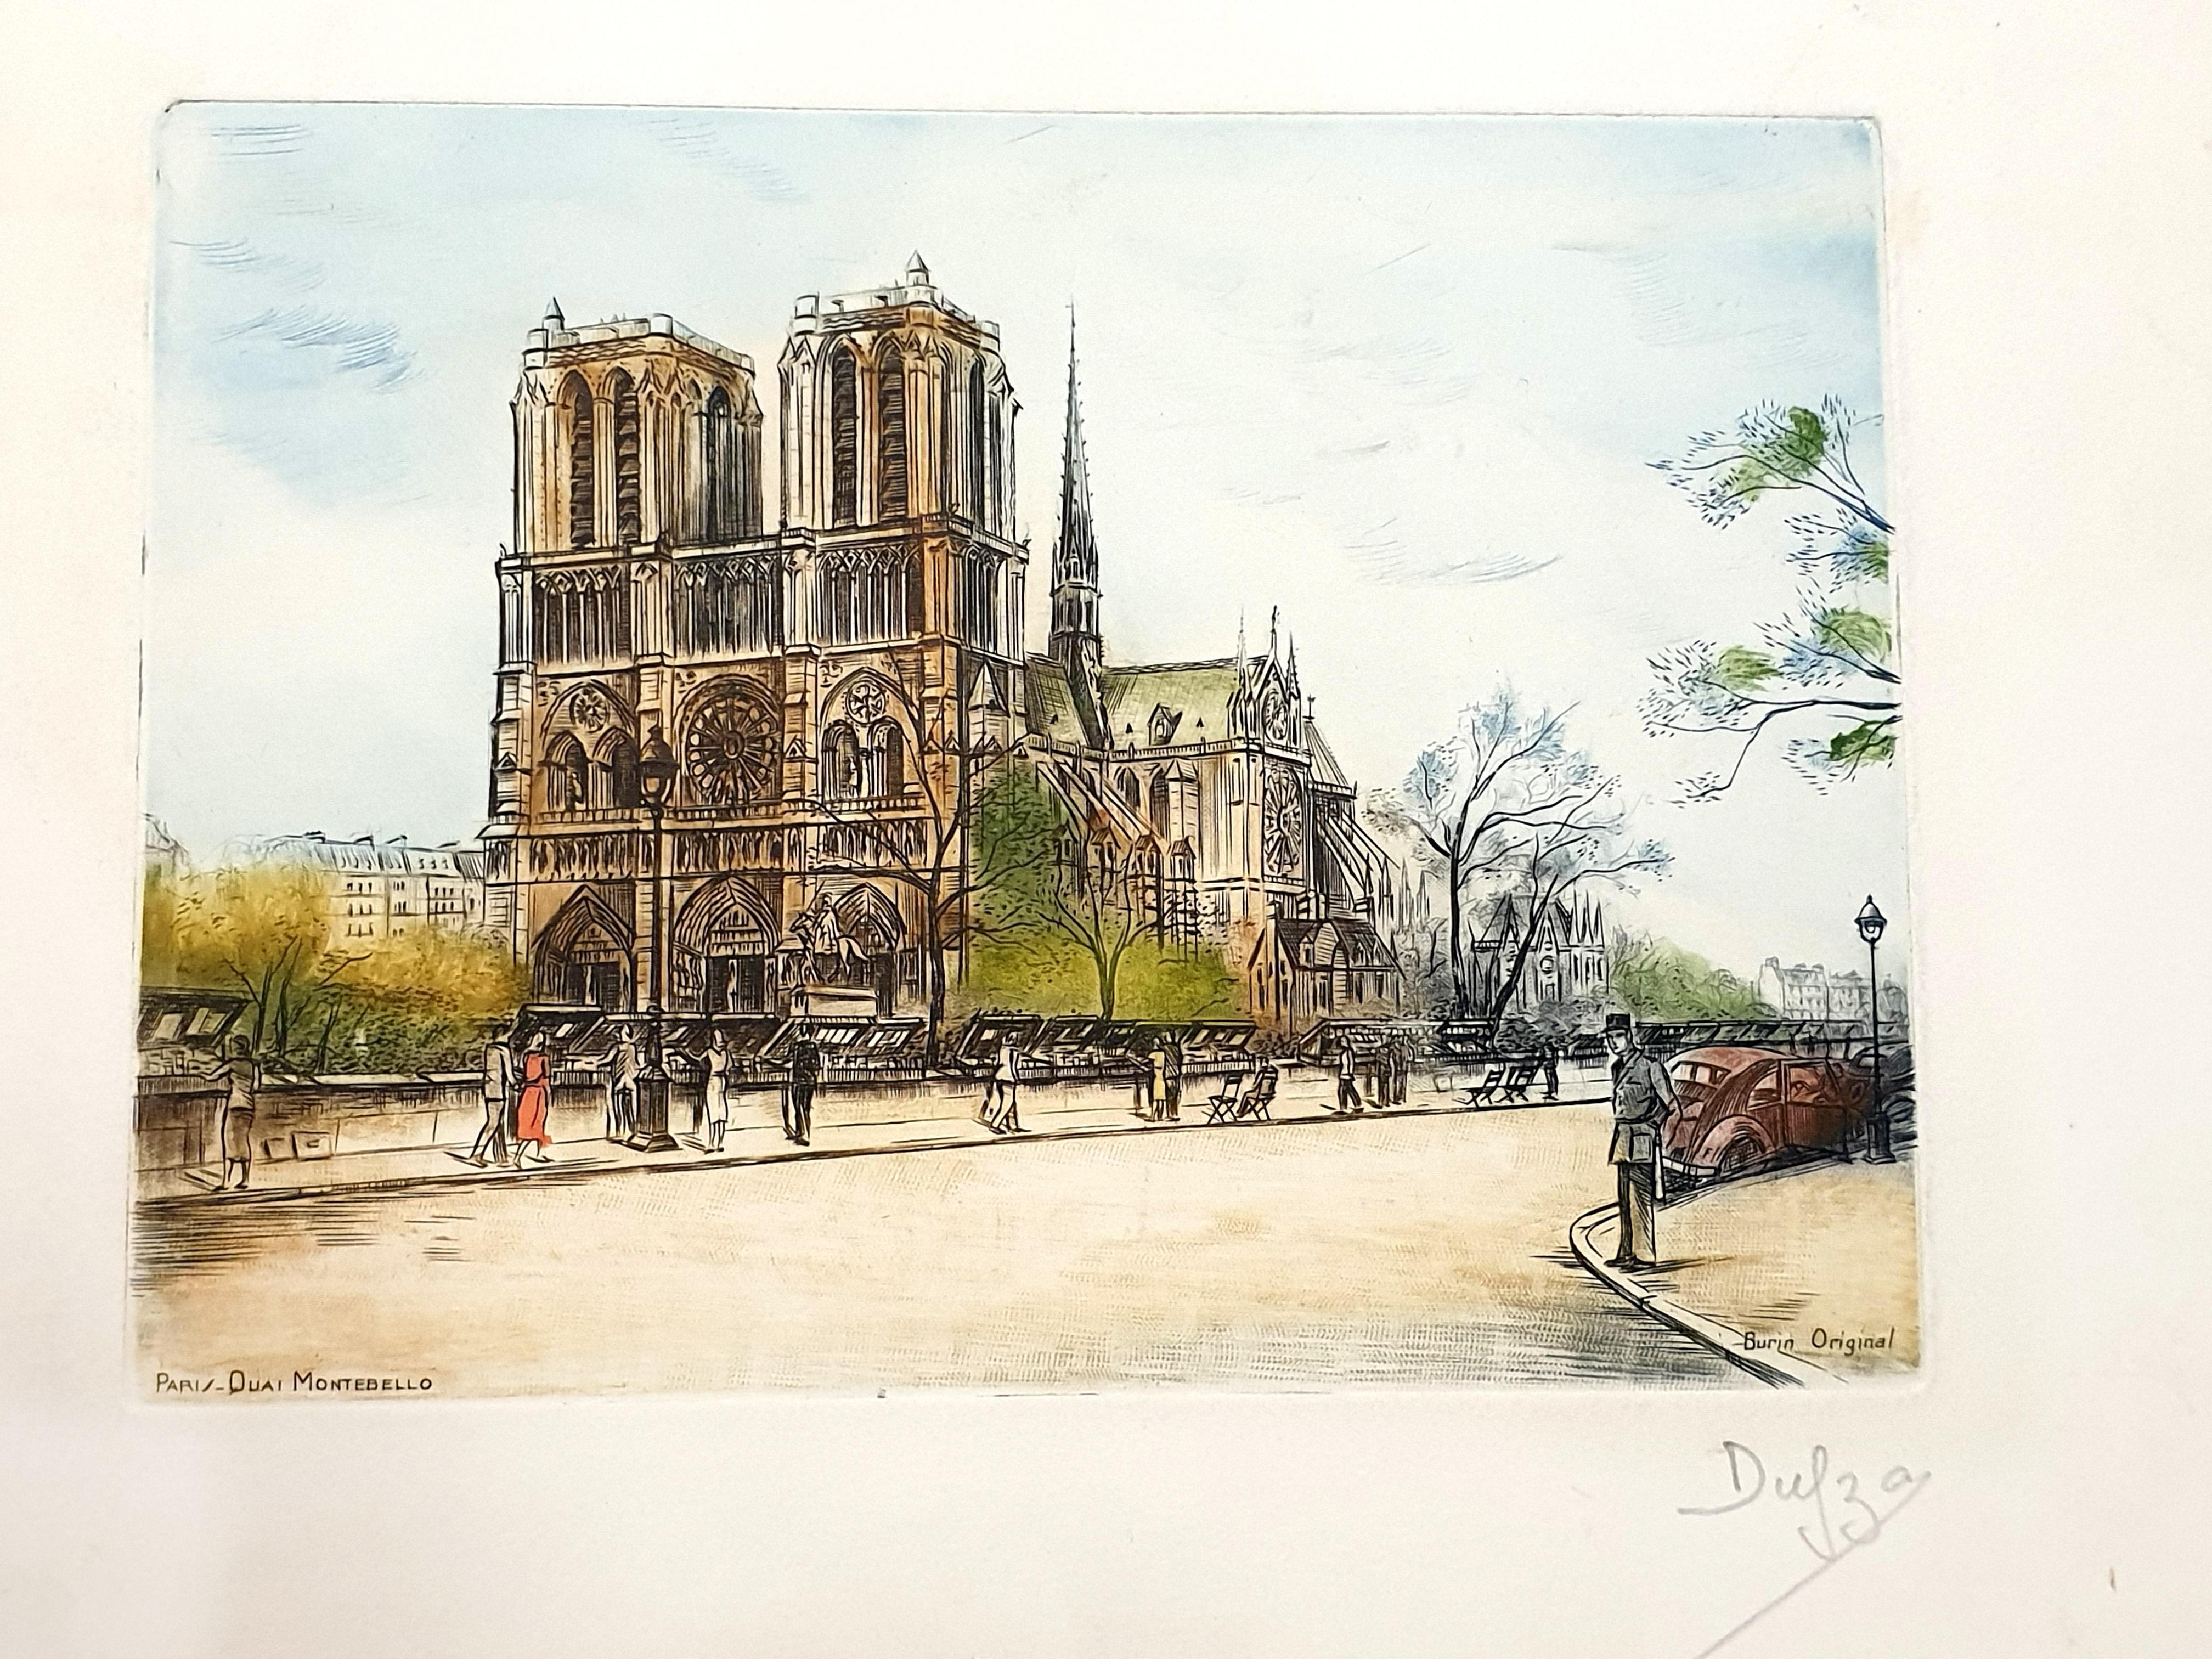 Dufza - Paris Notre Dame - Original Handsignierte Radierung
Um 1940
Handschriftlich mit Bleistift signiert
Abmessungen: 20 x 25 cm 
Unnummeriert wie ausgegeben